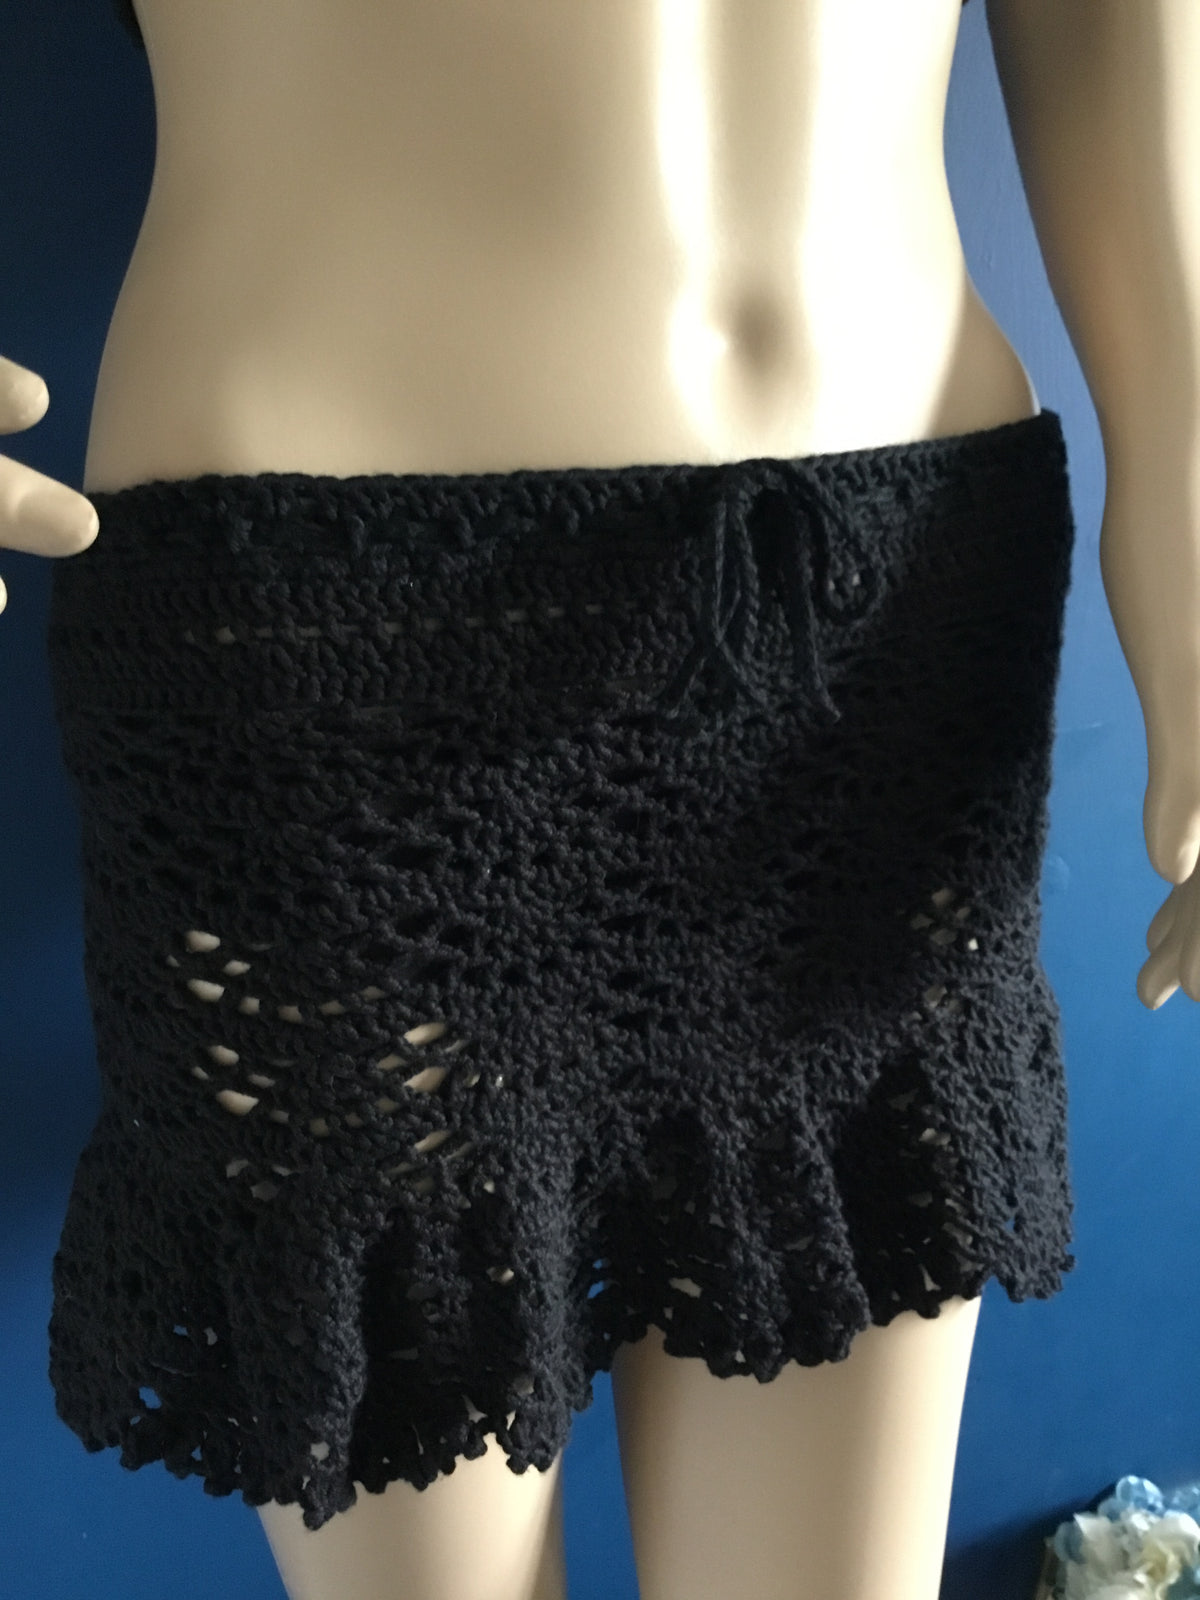 Crochet Handmade Lacey Cotton Skirt